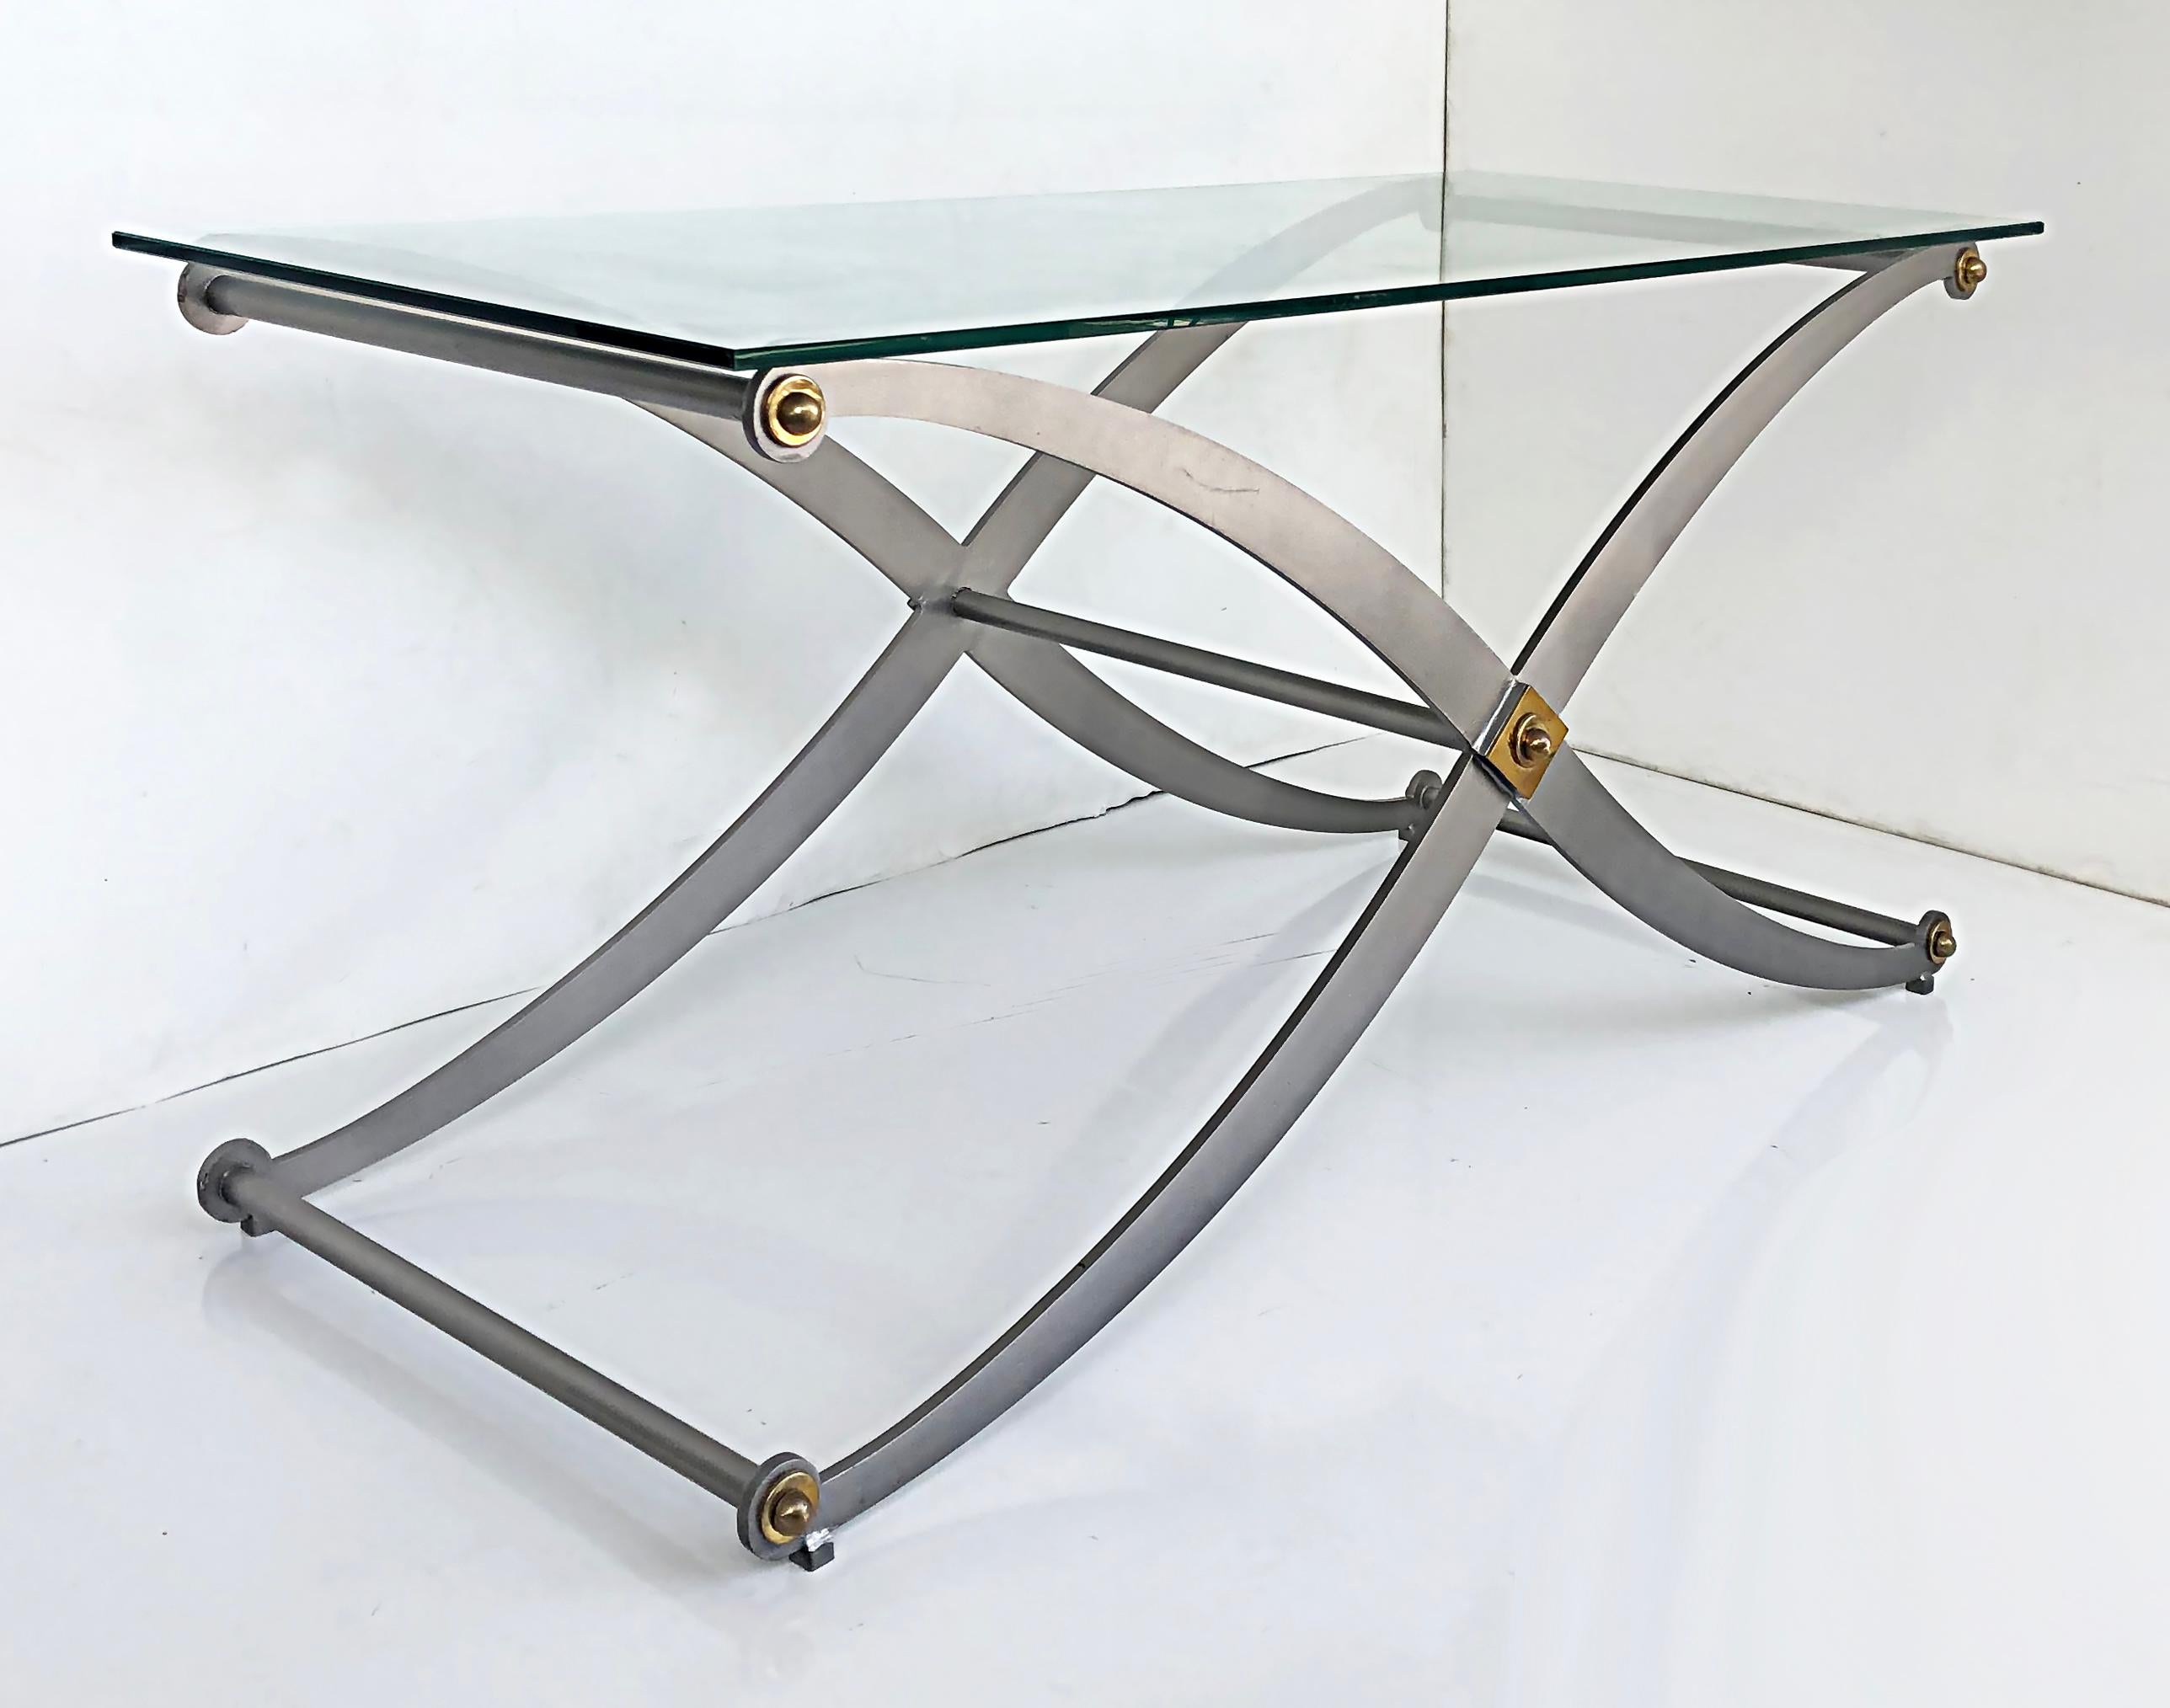 Konsolentisch mit Säbelbeinen aus Stahl/Messing und Glasplatte.

Zum Verkauf angeboten wird ein eleganter zweifarbiger, verschnörkelter Säbelbein-Konsolentisch mit x-förmigem Rahmen, der gerade mit einer neuen dicken Glasplatte ausgestattet wurde.